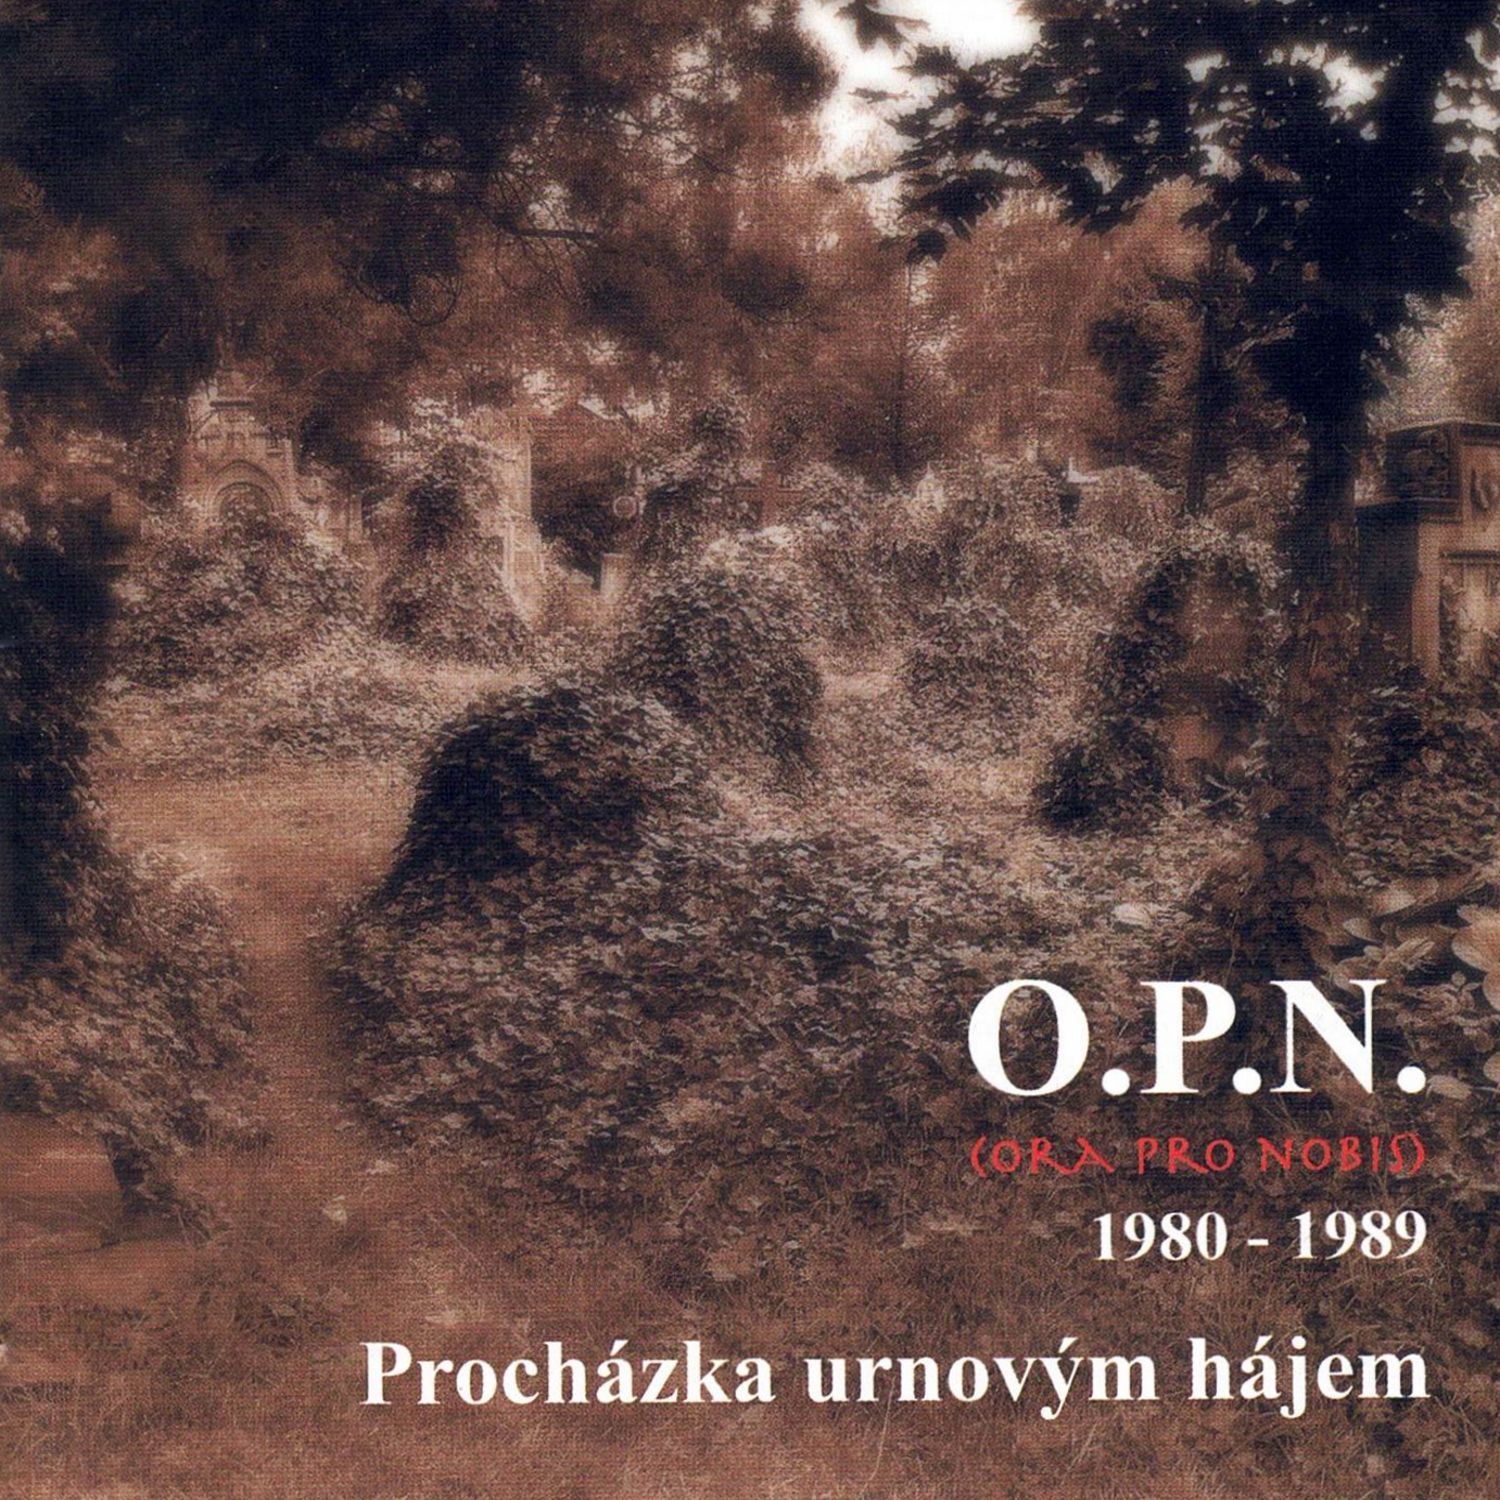 CD Shop - O.P.N. PROCHAZKA URNOVYM HAJEM (1980 - 1989)